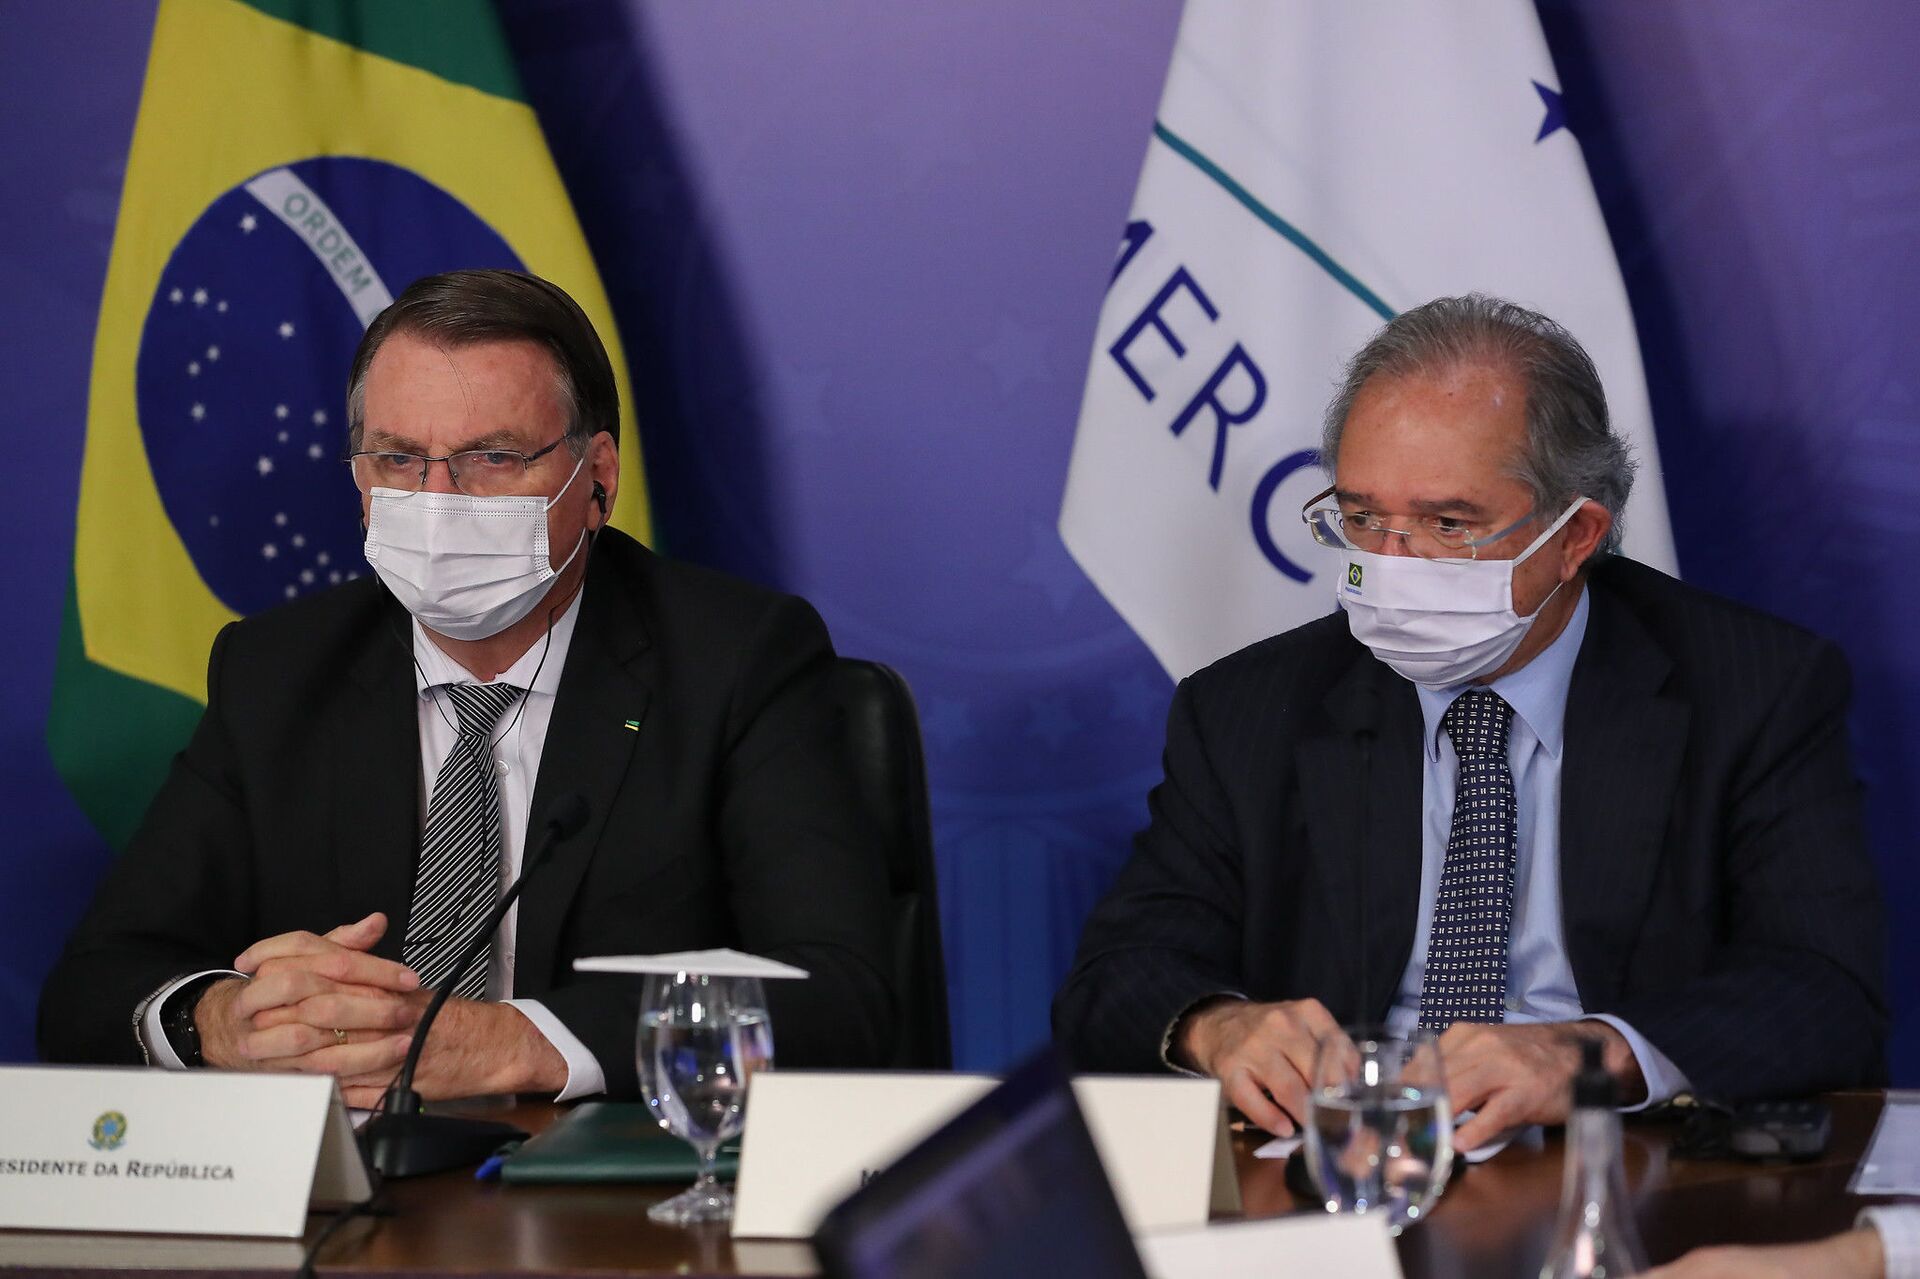  Brasil assume presidência do Mercosul com Bolsonaro fazendo duras críticas à Argentina - Sputnik Brasil, 1920, 08.07.2021